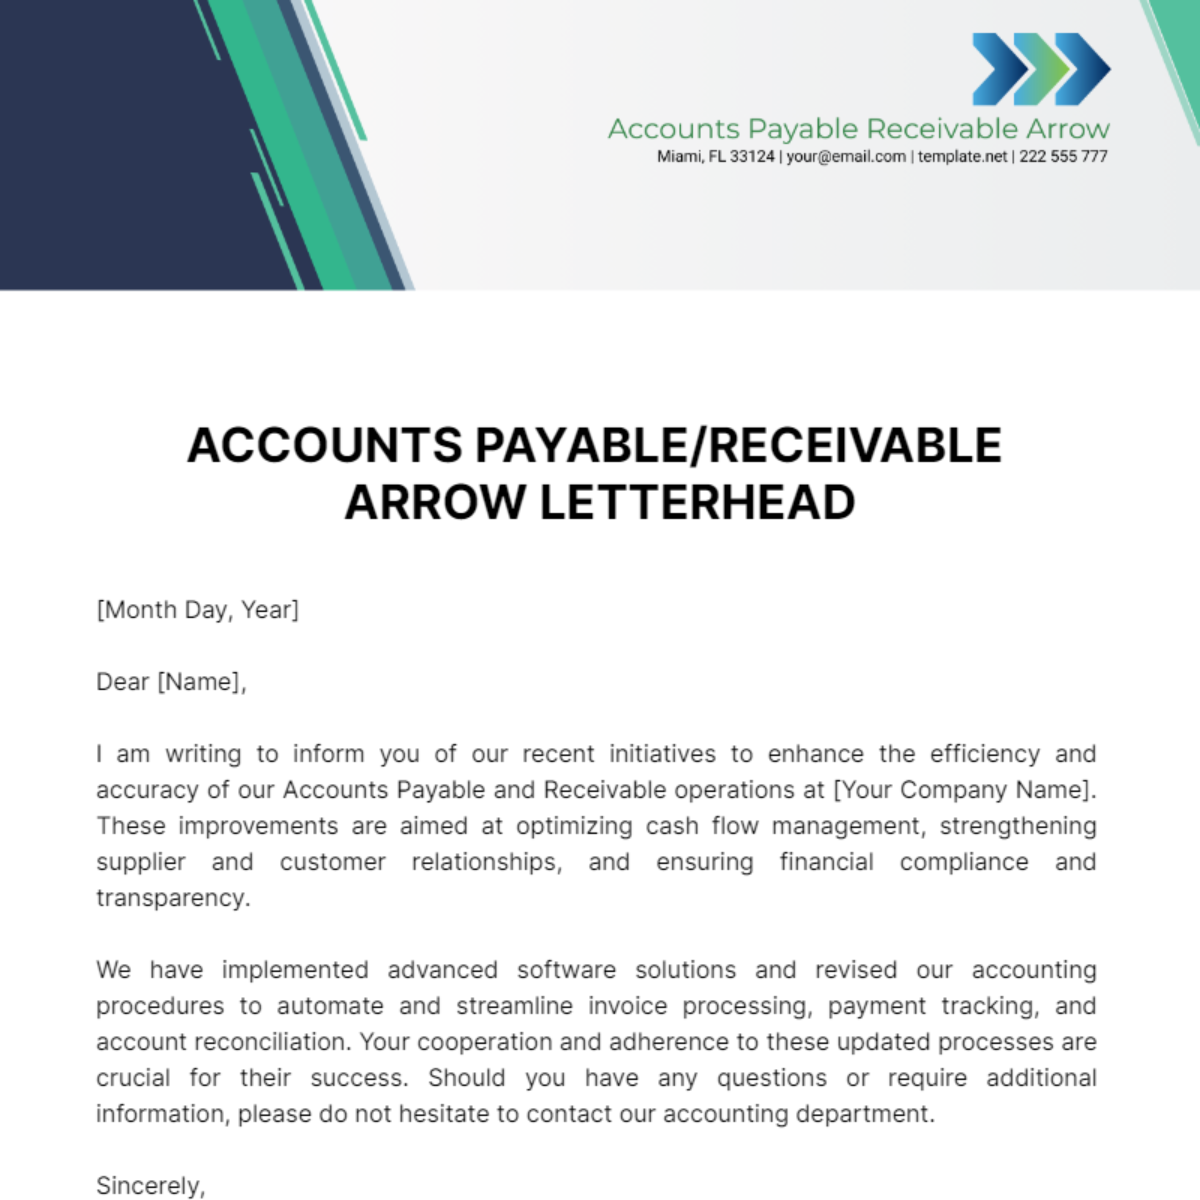 Accounts Payable/Receivable Arrow Letterhead Template